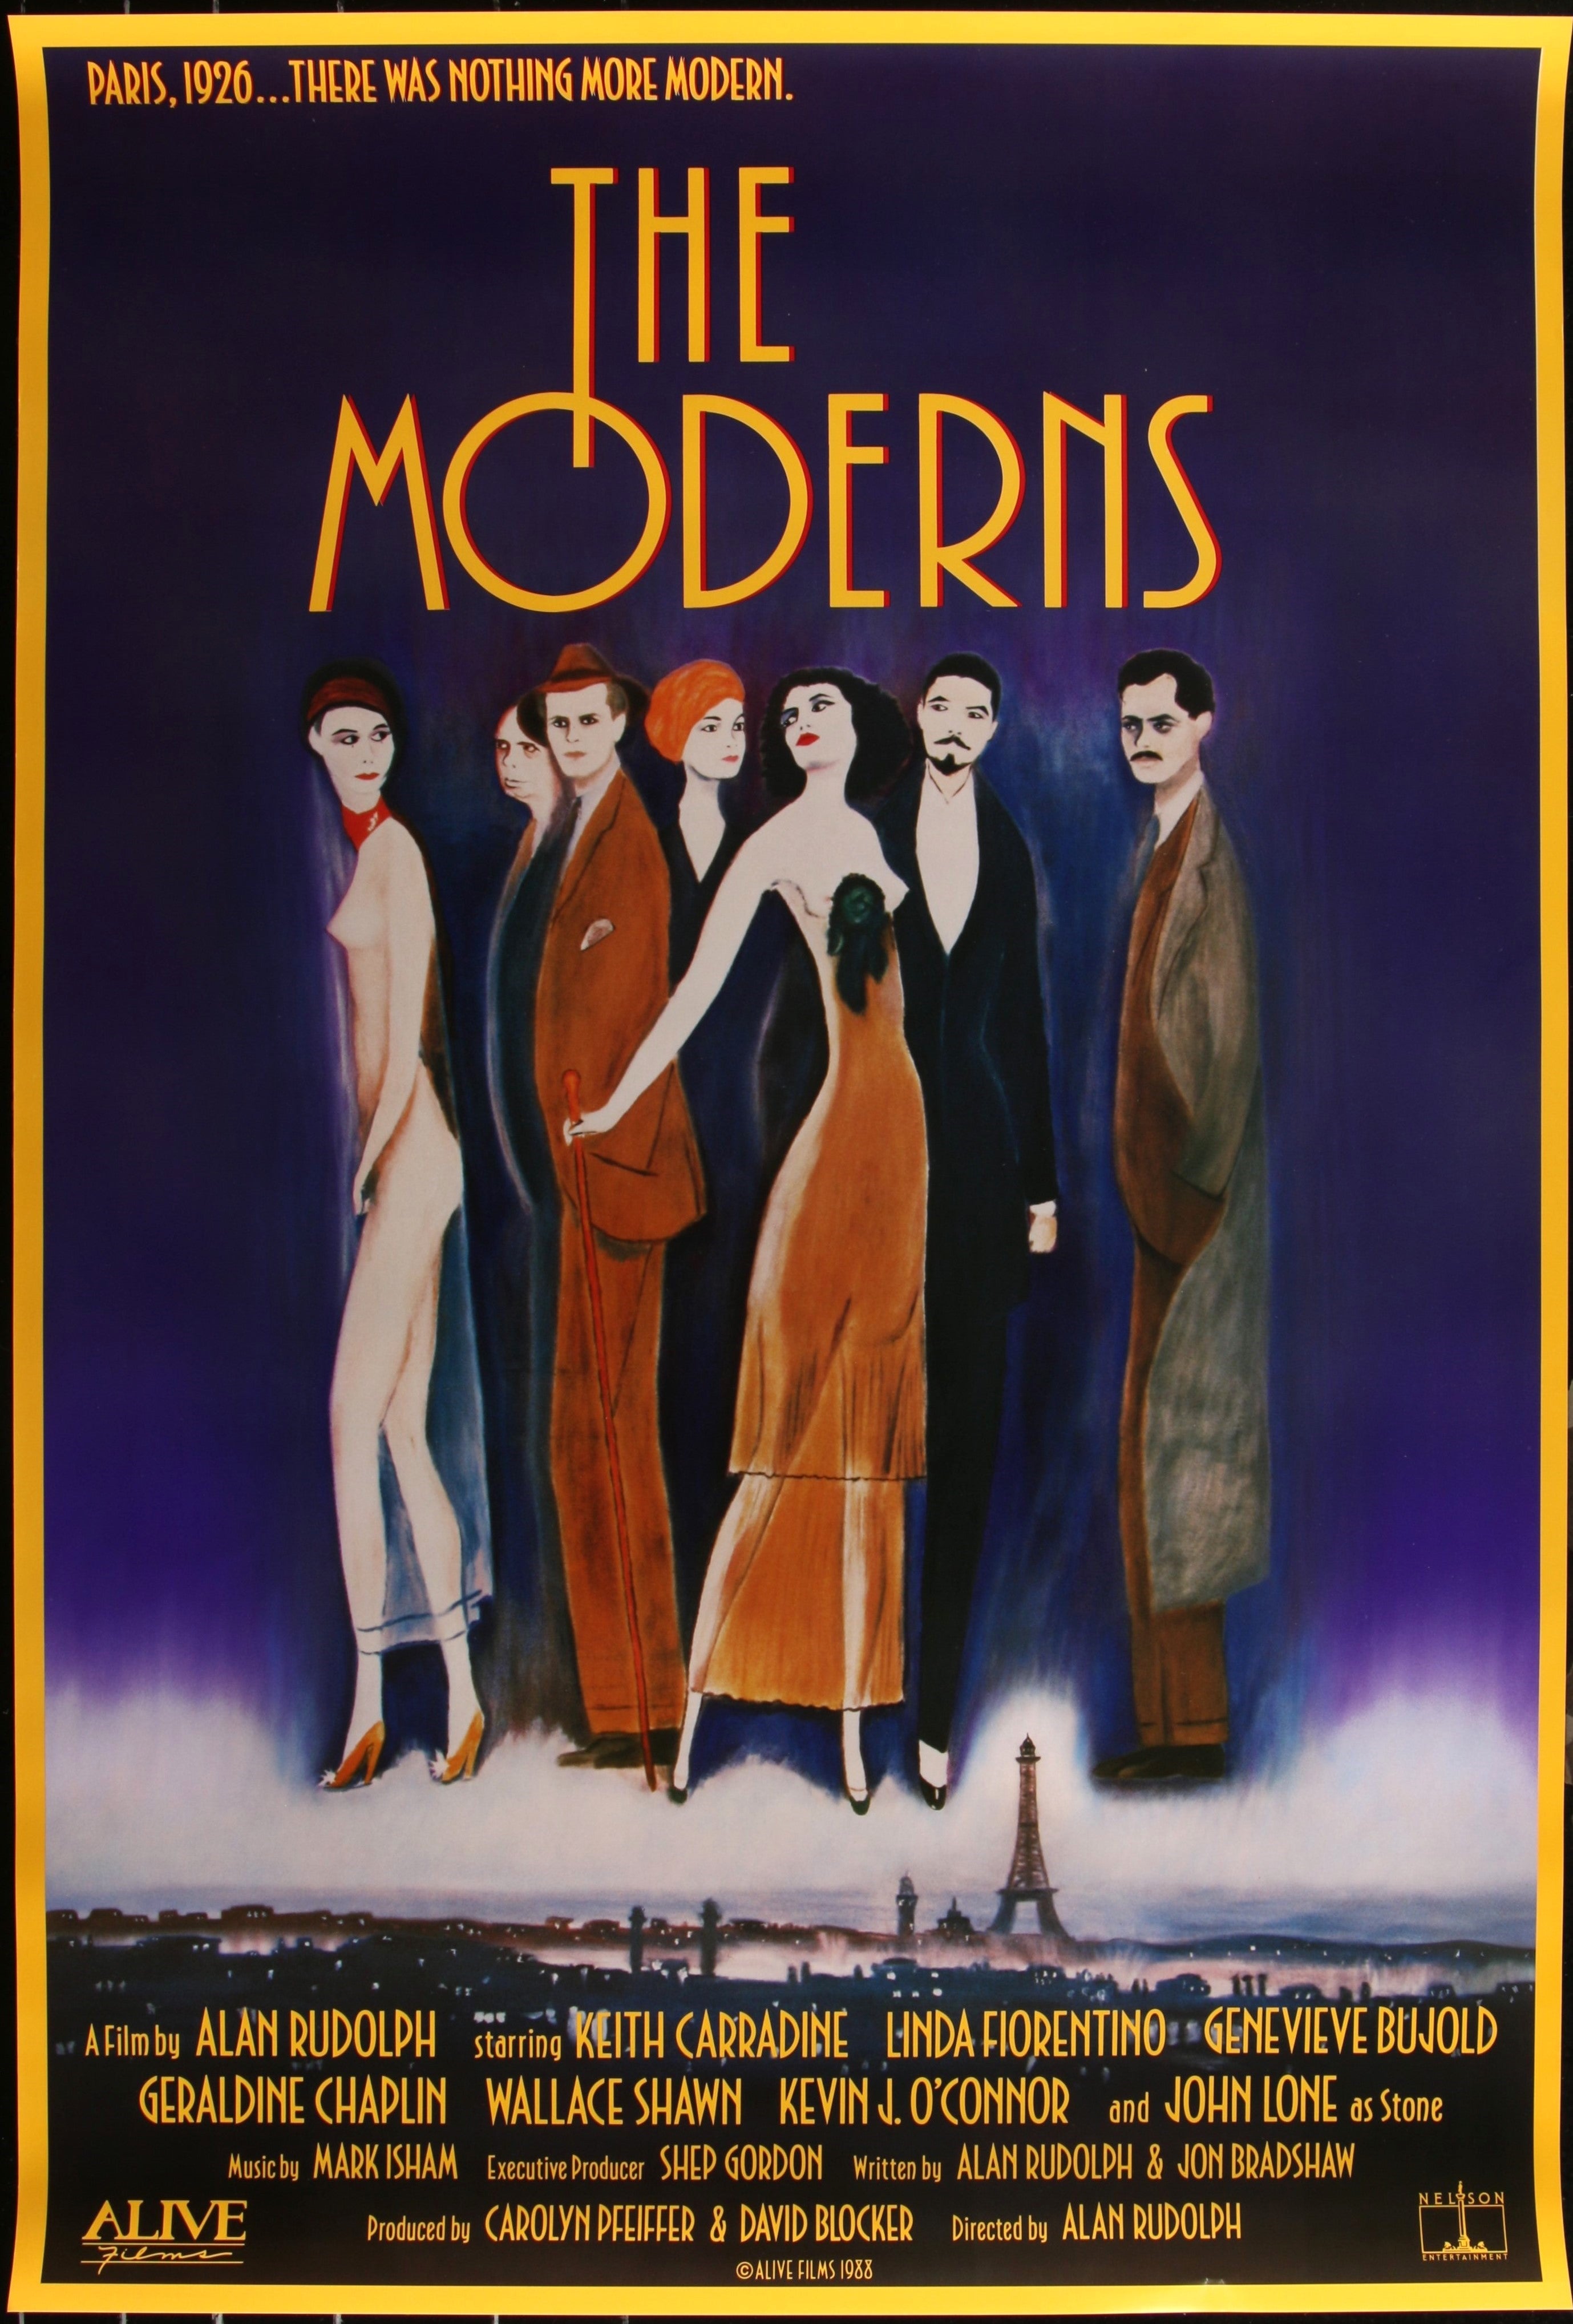 THE MODERNS (1988)